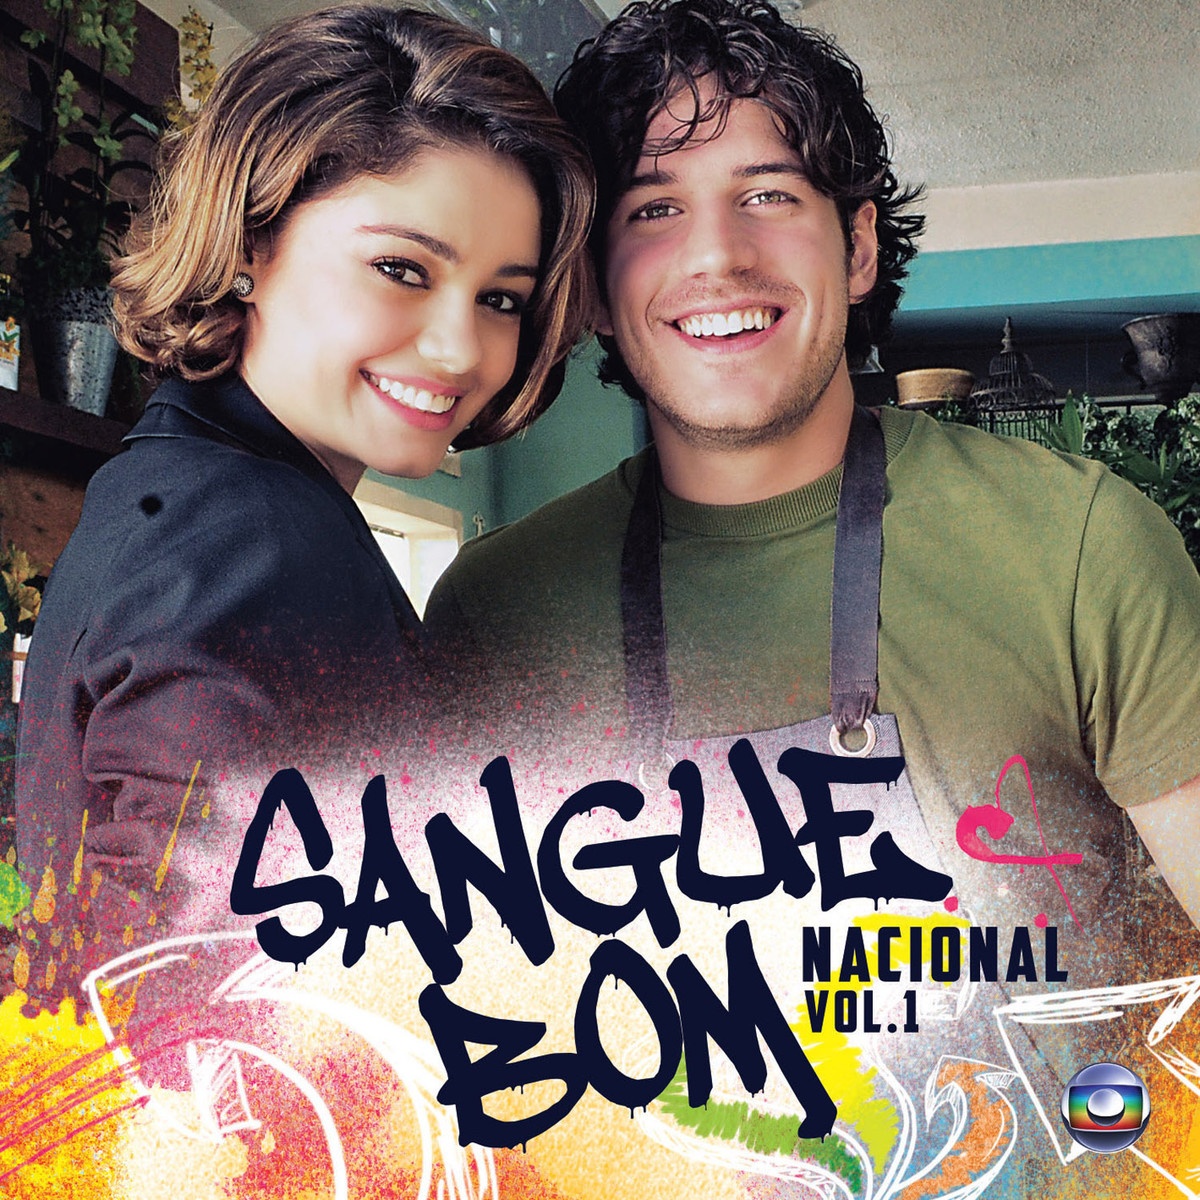 Sangue Bom - Nacional, Vol. 1 (Soundtrack)